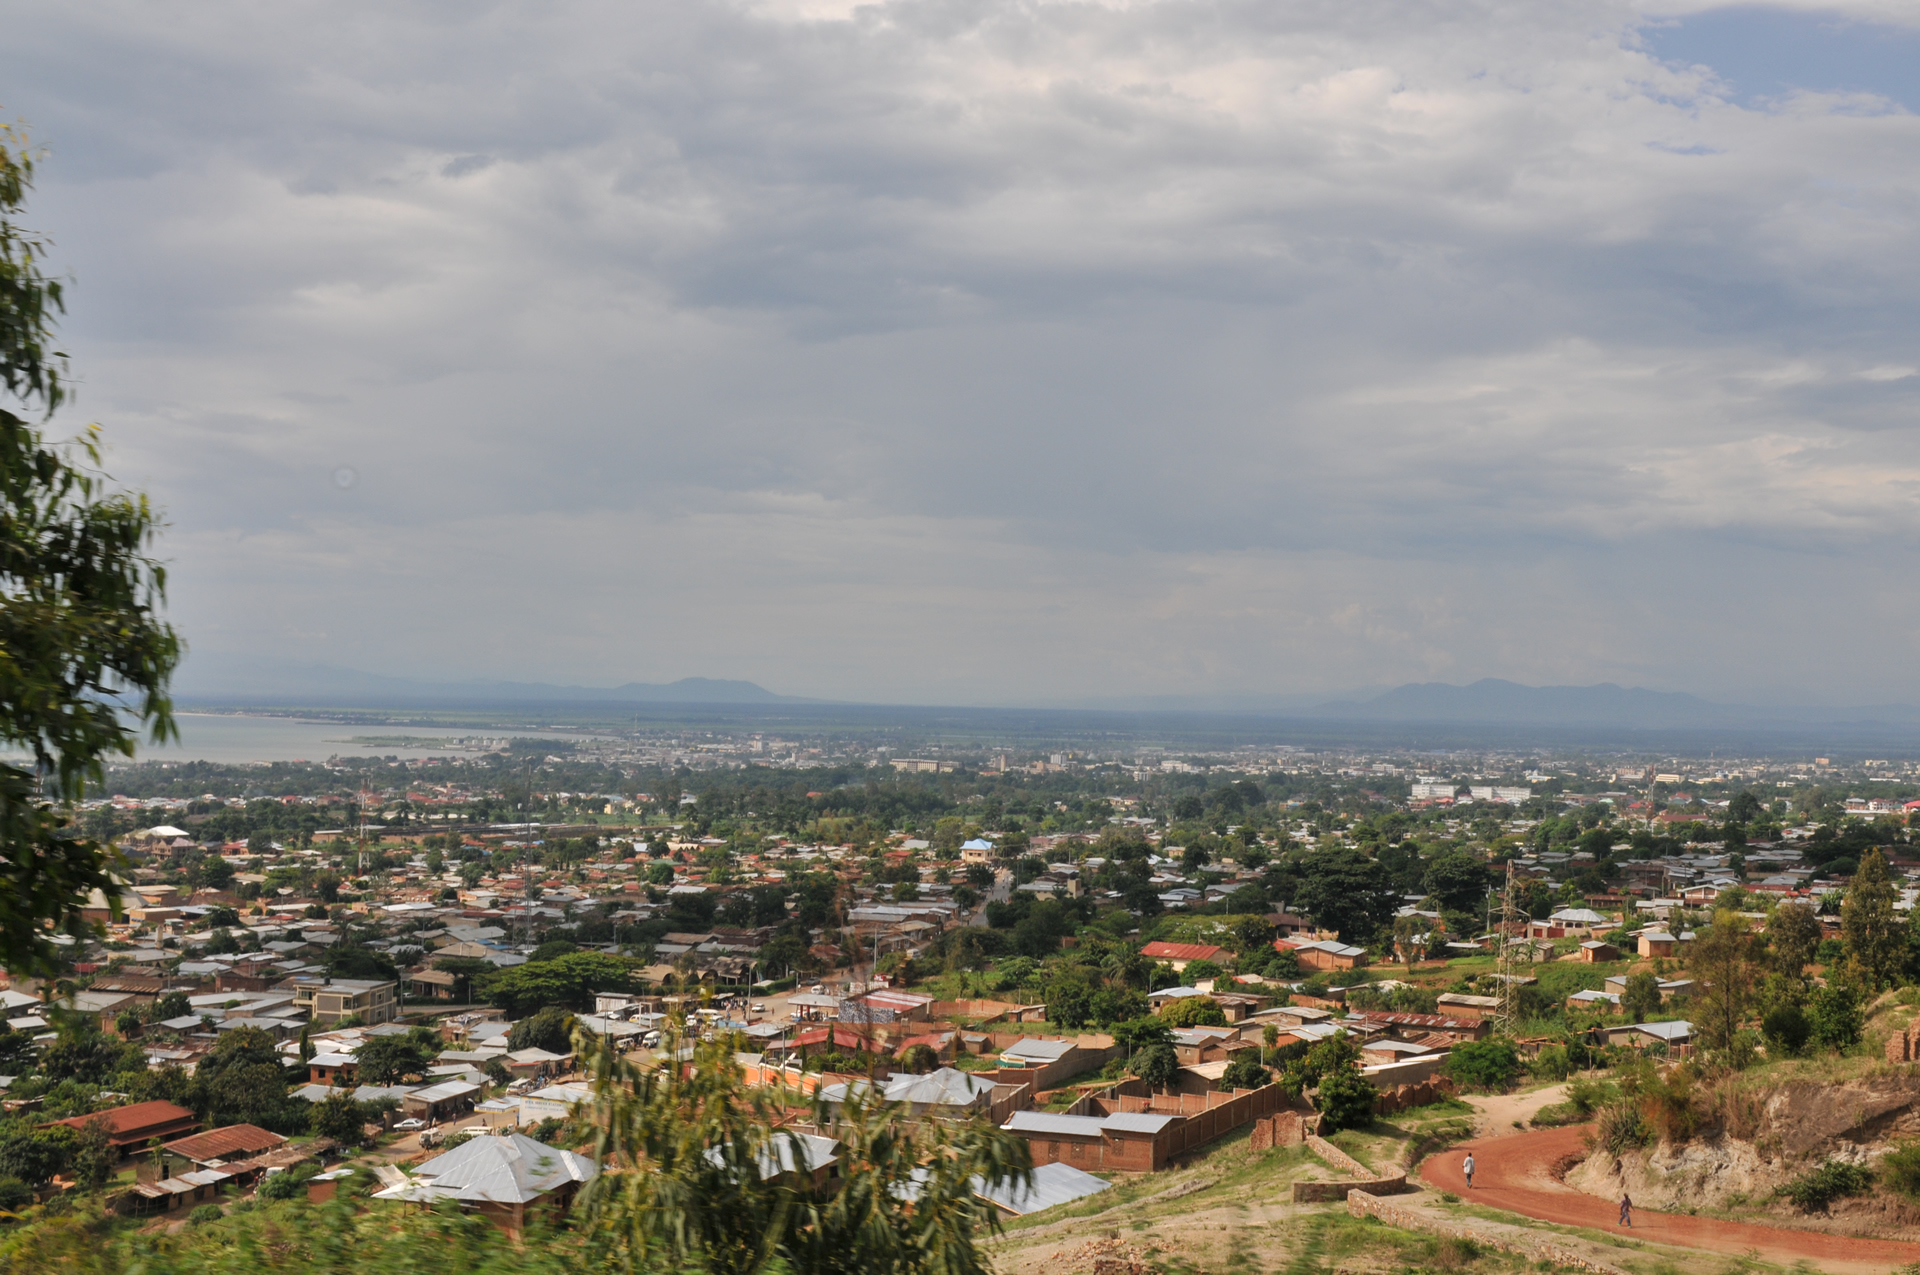 Overview of burundi